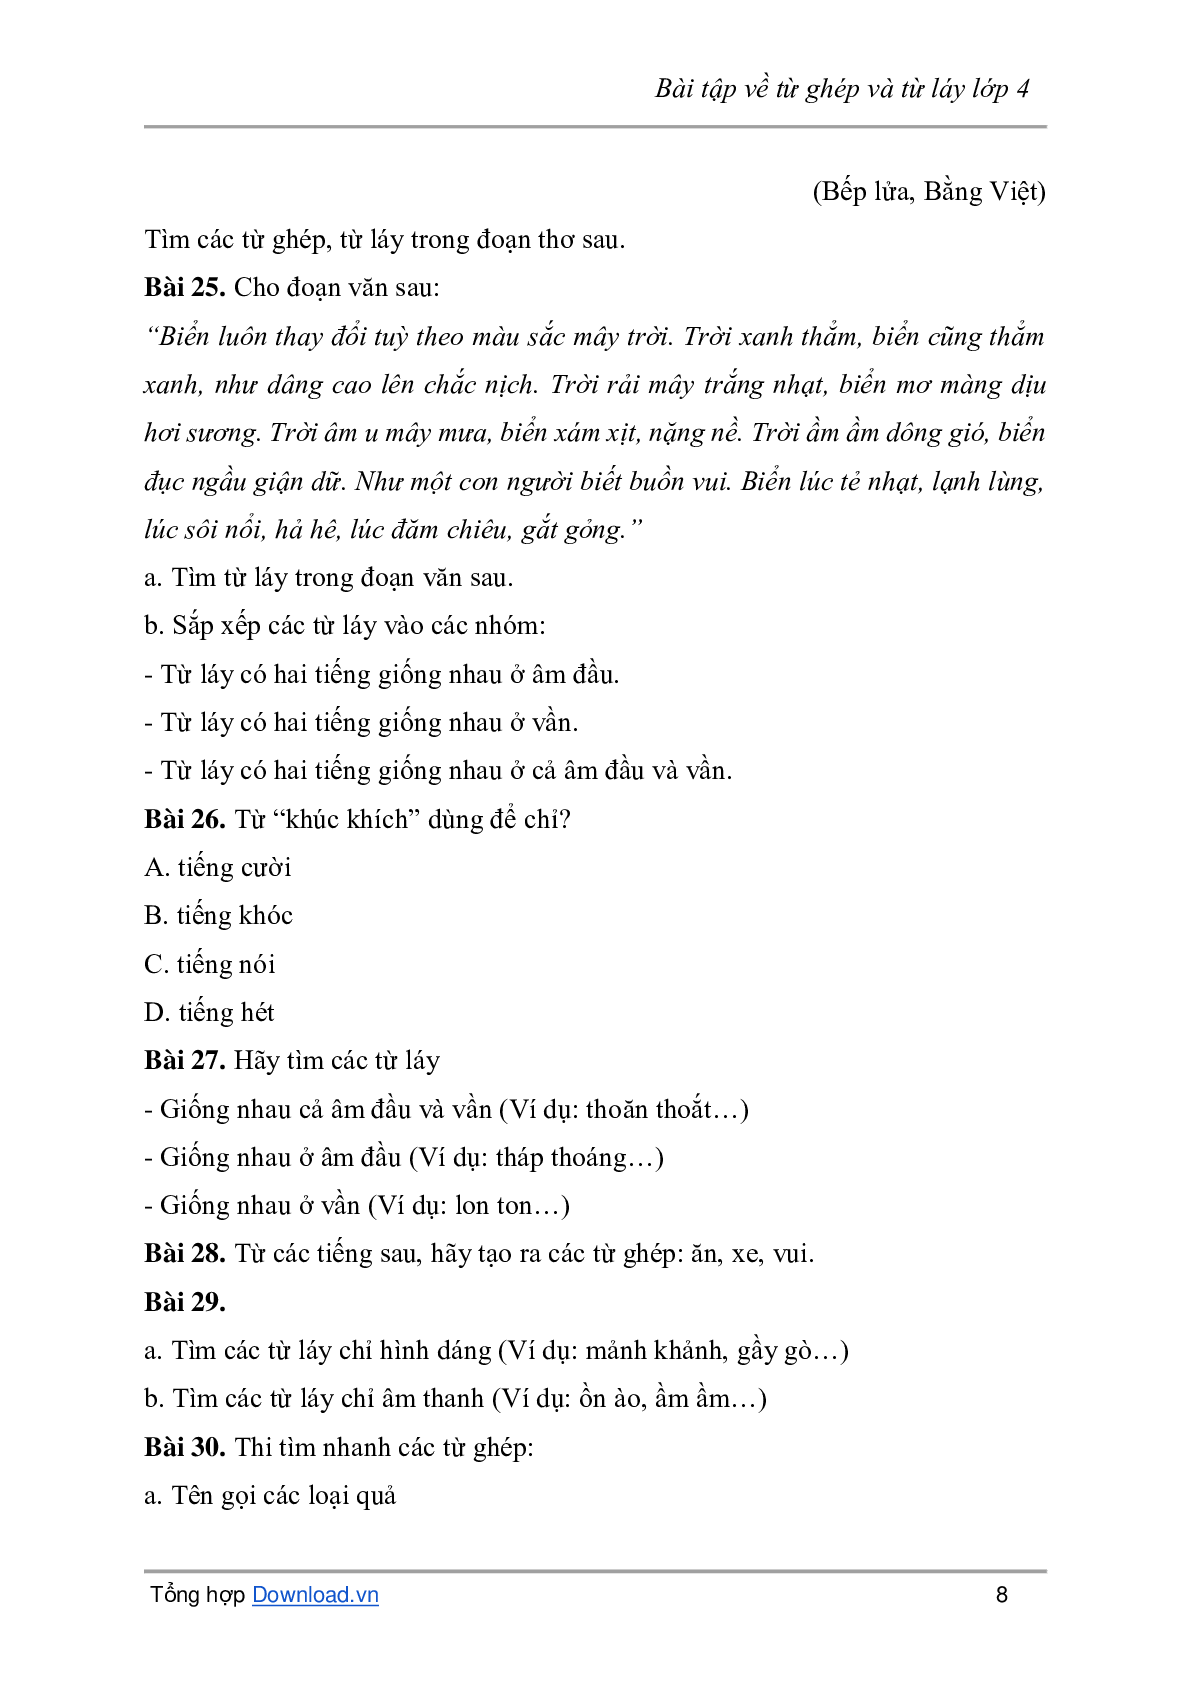 Bài tập về từ ghép và từ láy môn Tiếng Việt lớp 4 có đáp án (trang 8)